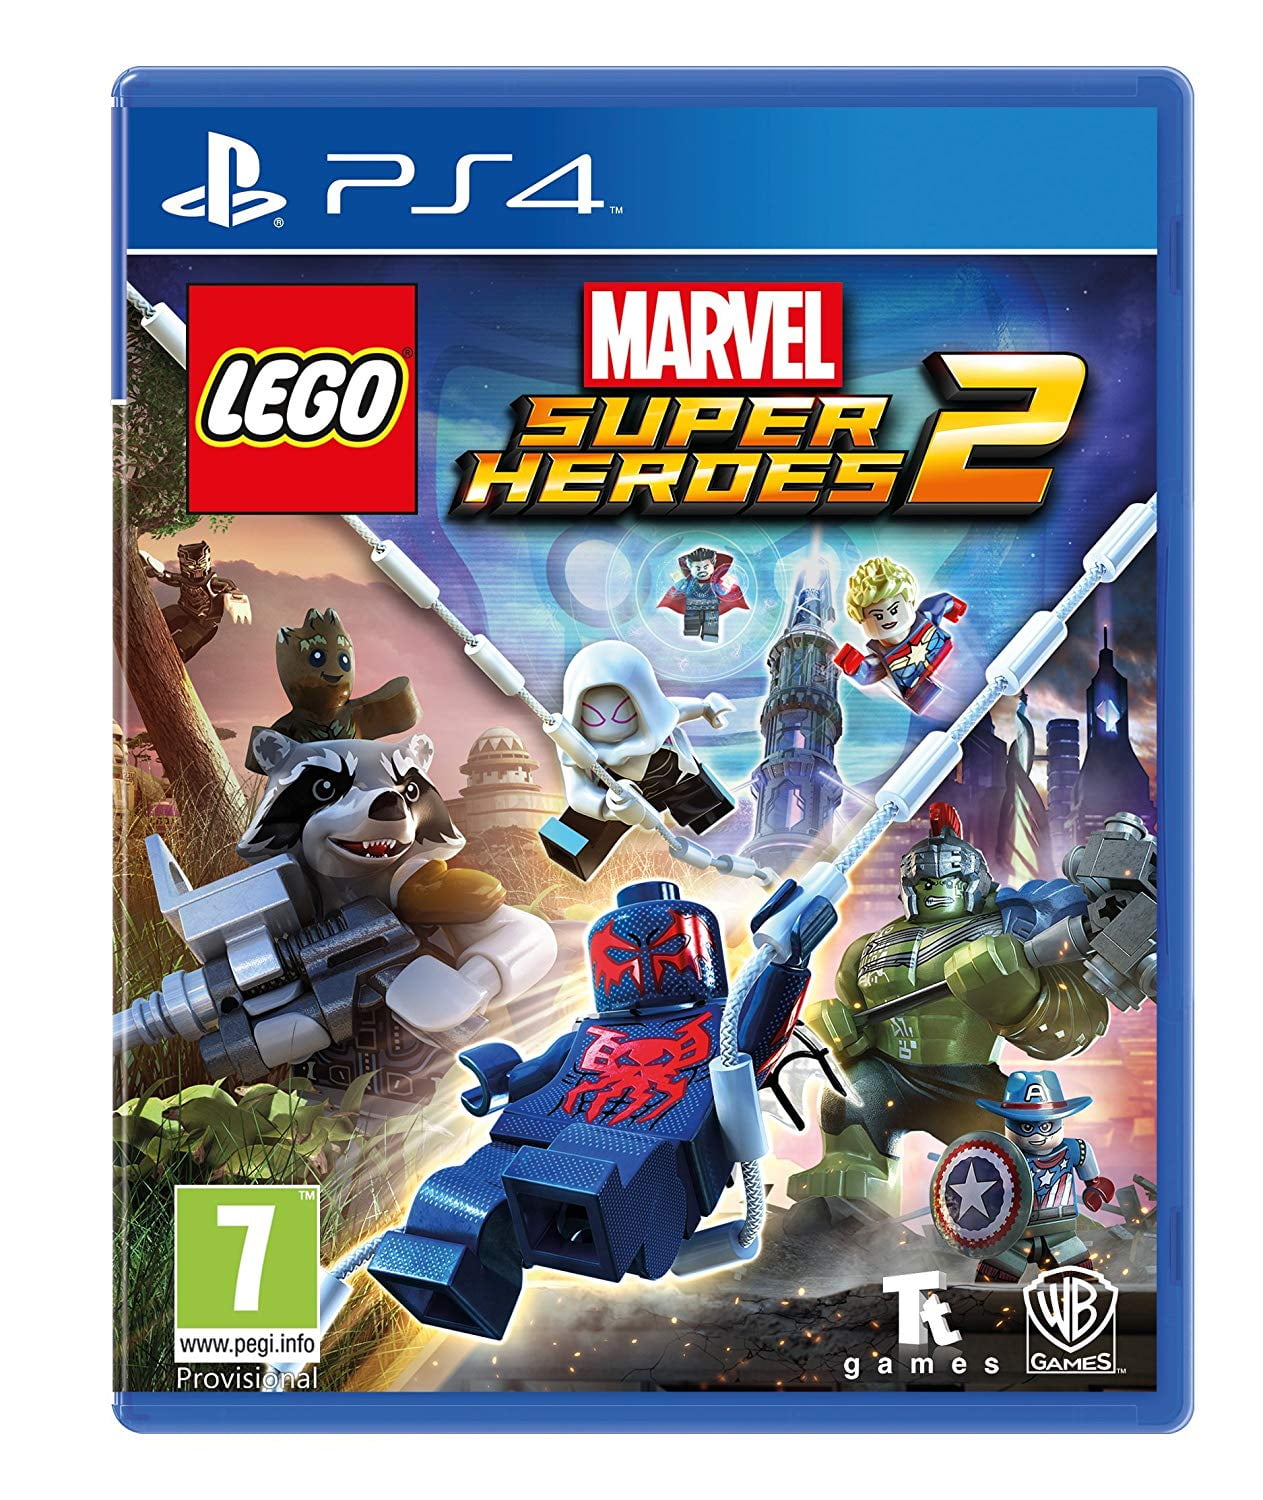 LEGO Marvel Super Heroes 2, Warner 4, 883929597802